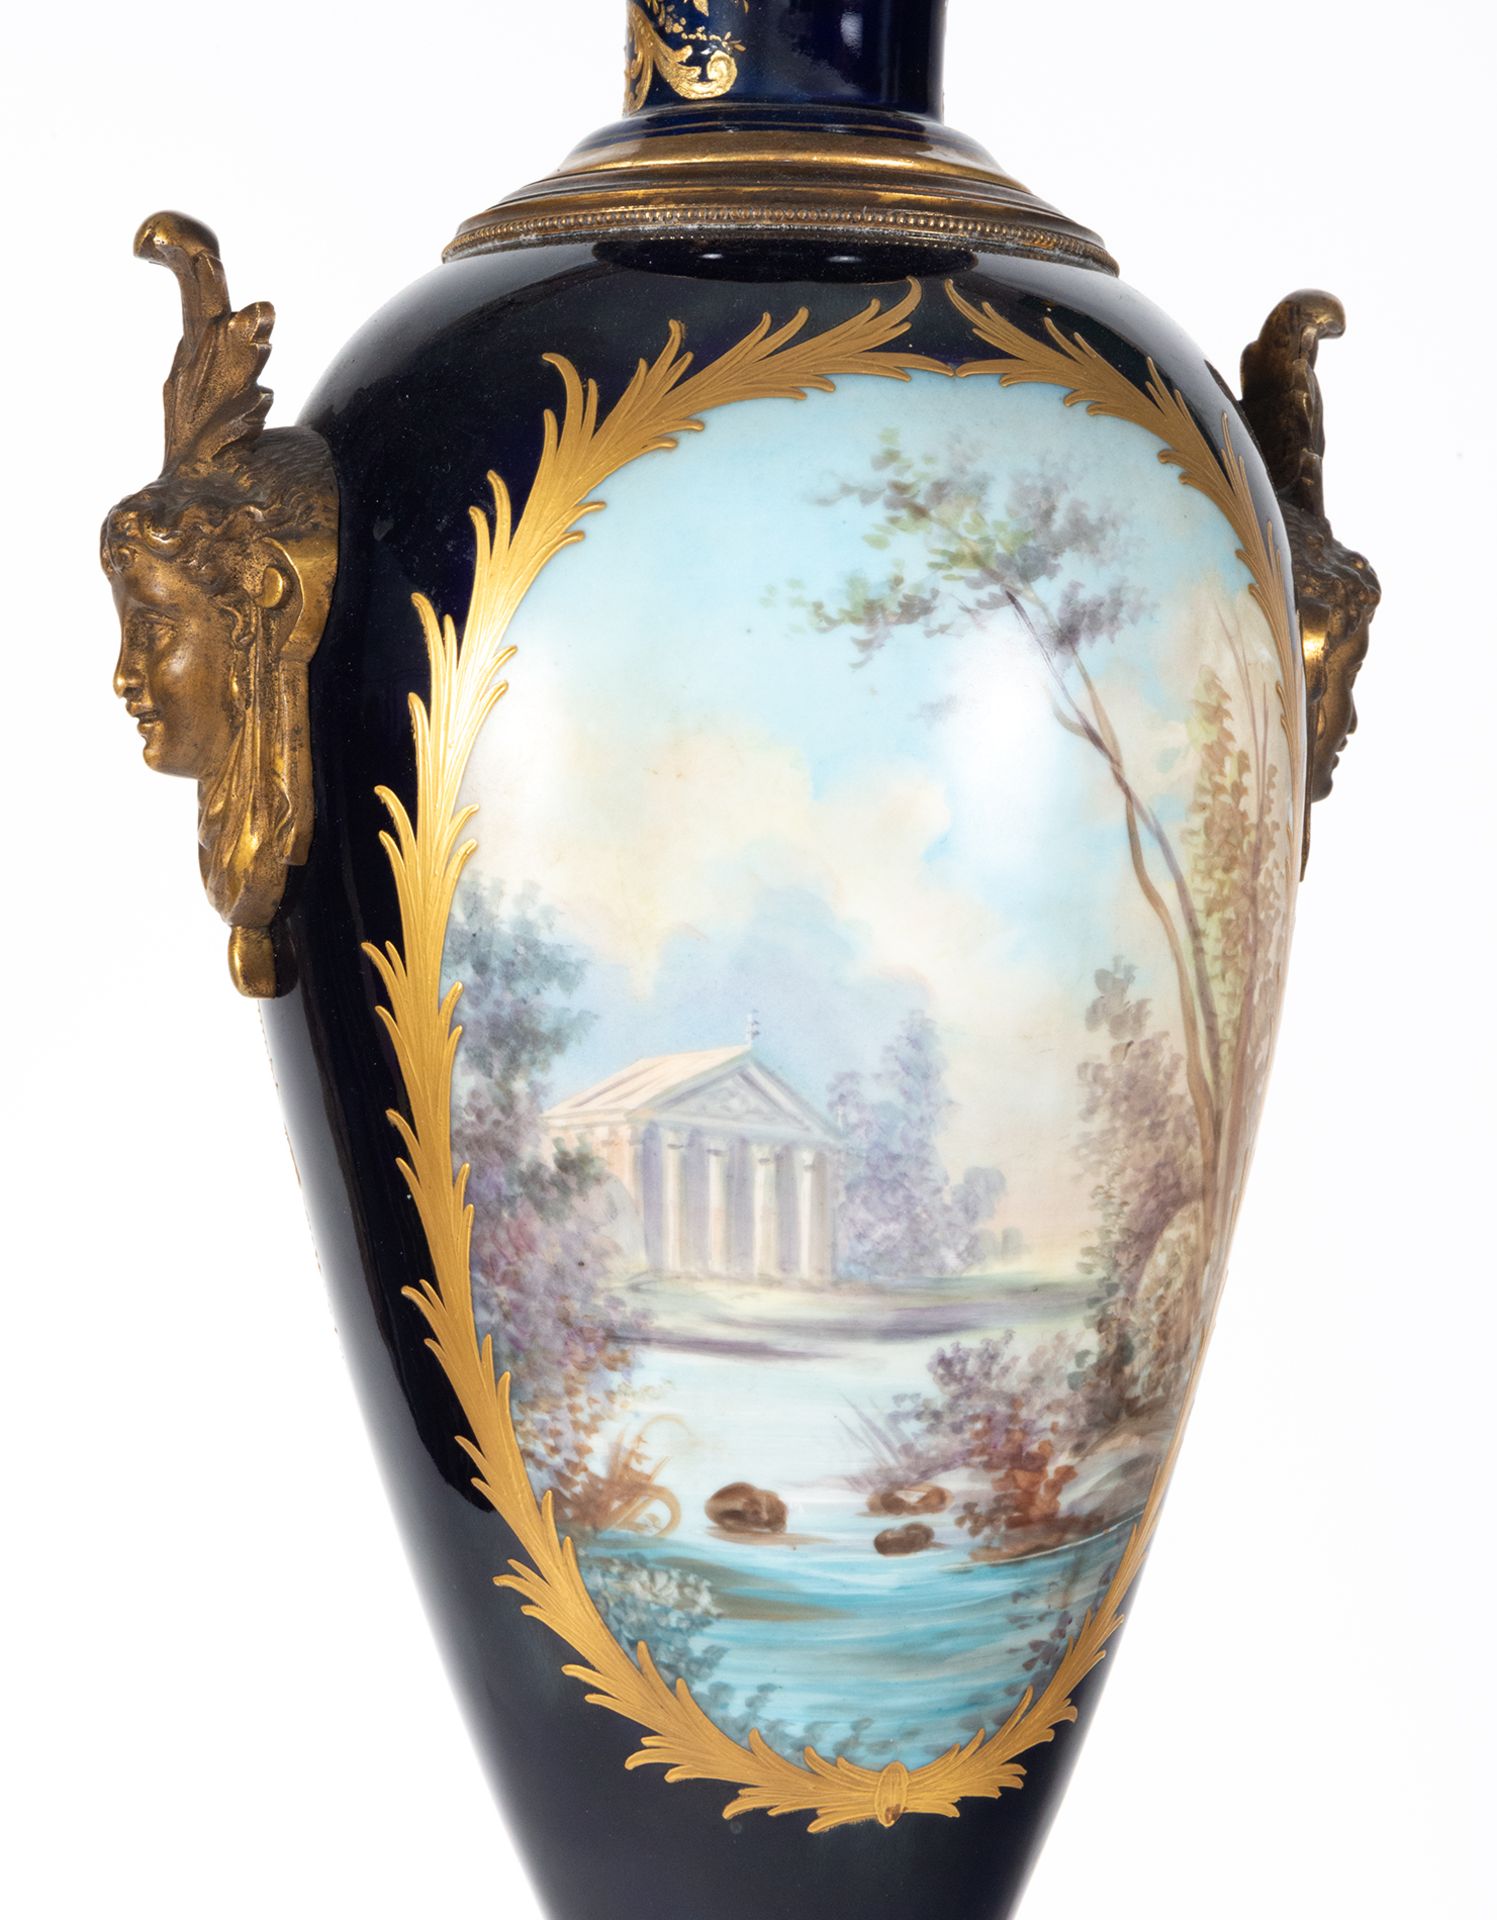 Pair of Svres Vases, 19th century French school - Image 15 of 15